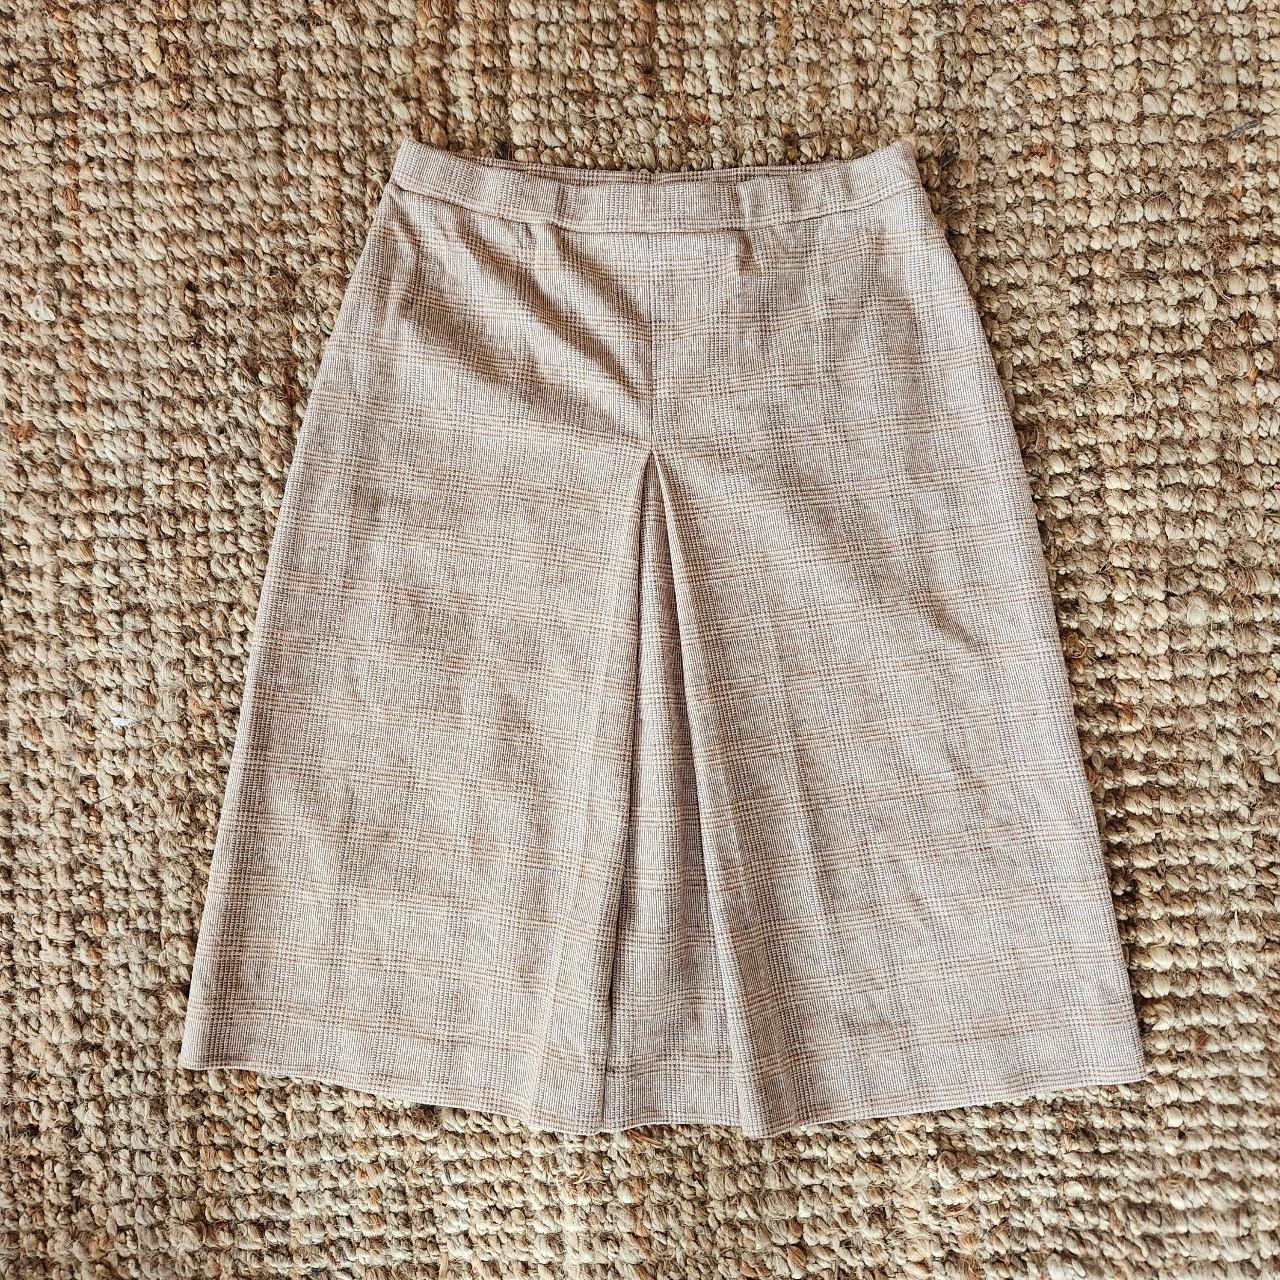 Vtg 70s brown plaid skirt #bfvallbottoms Brown,... - Depop